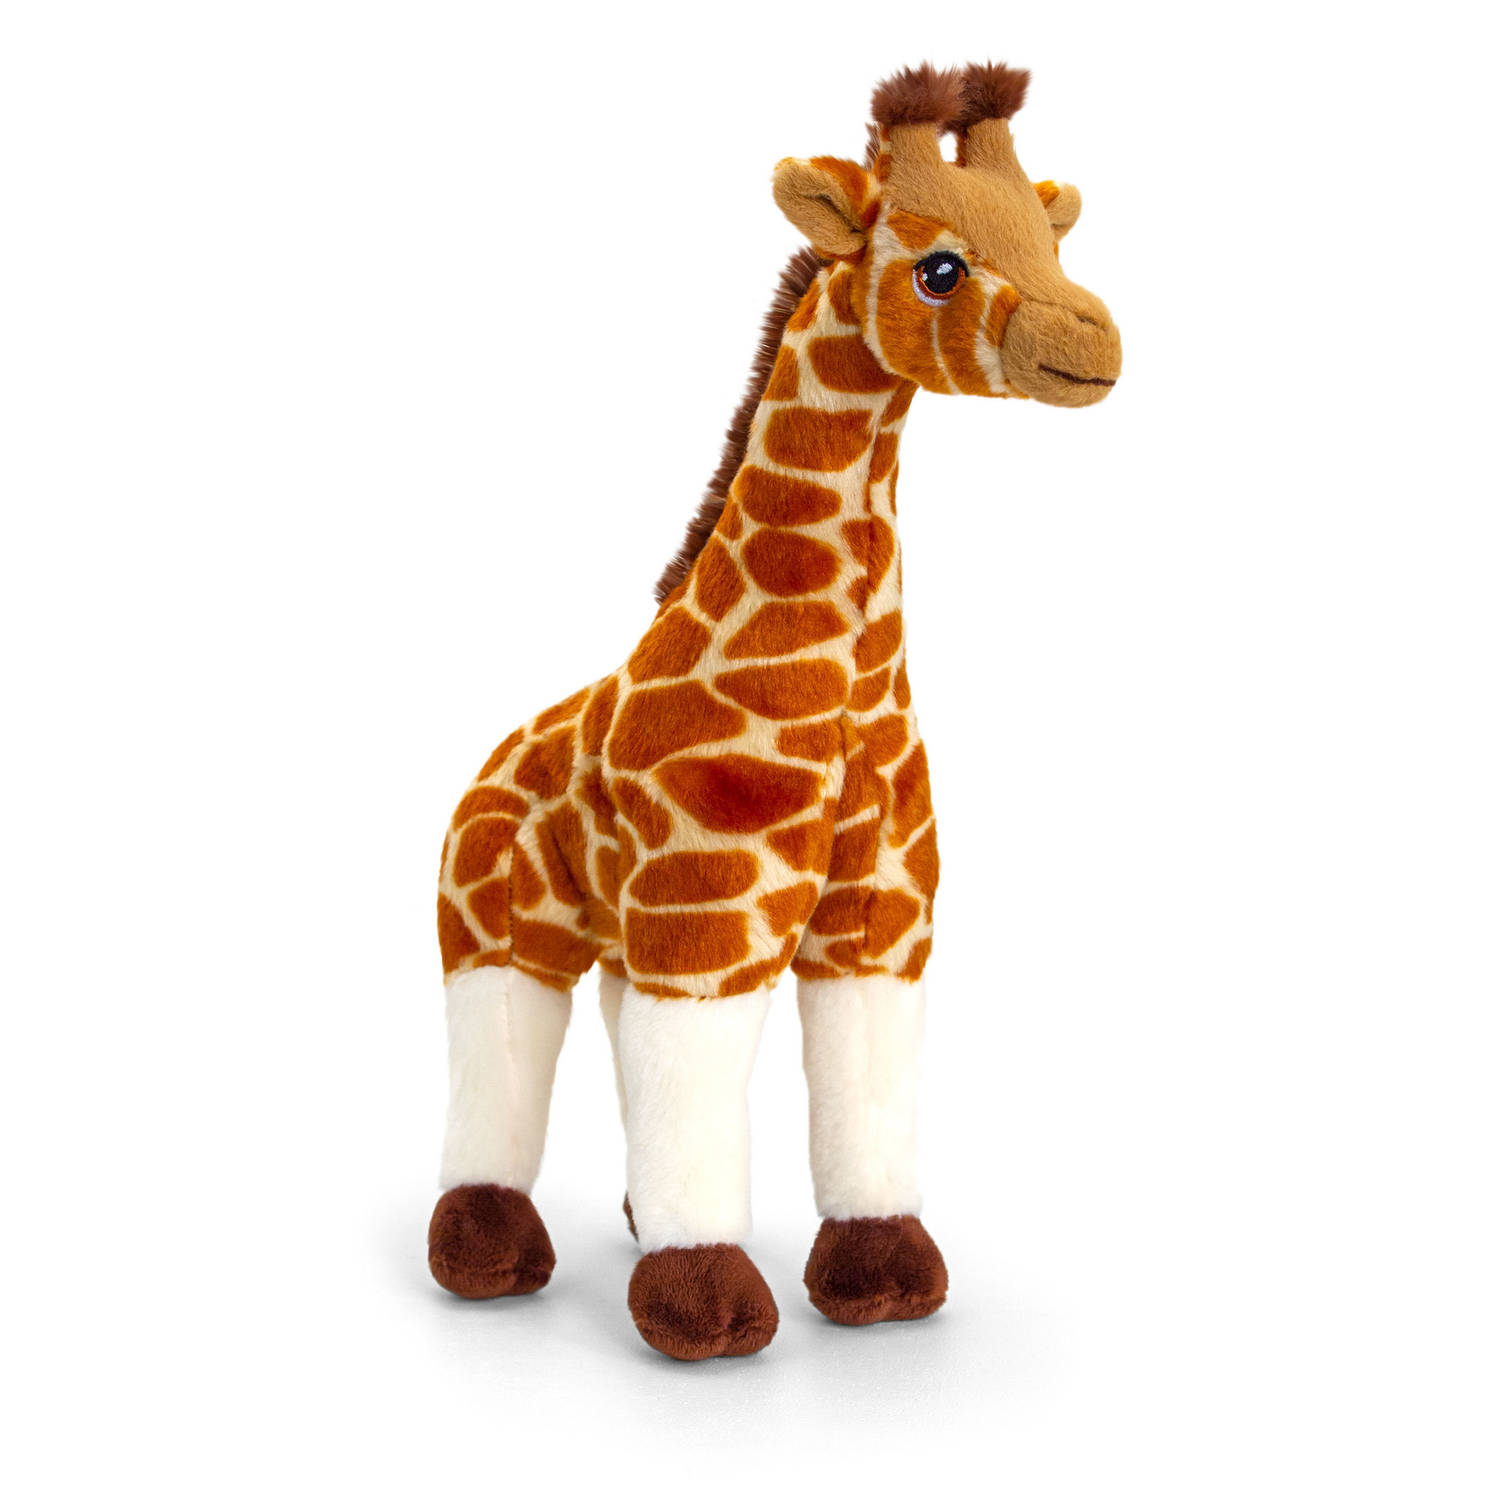 Pluche knuffel dieren giraffe 30 cm - Knuffelbeesten speelgoed